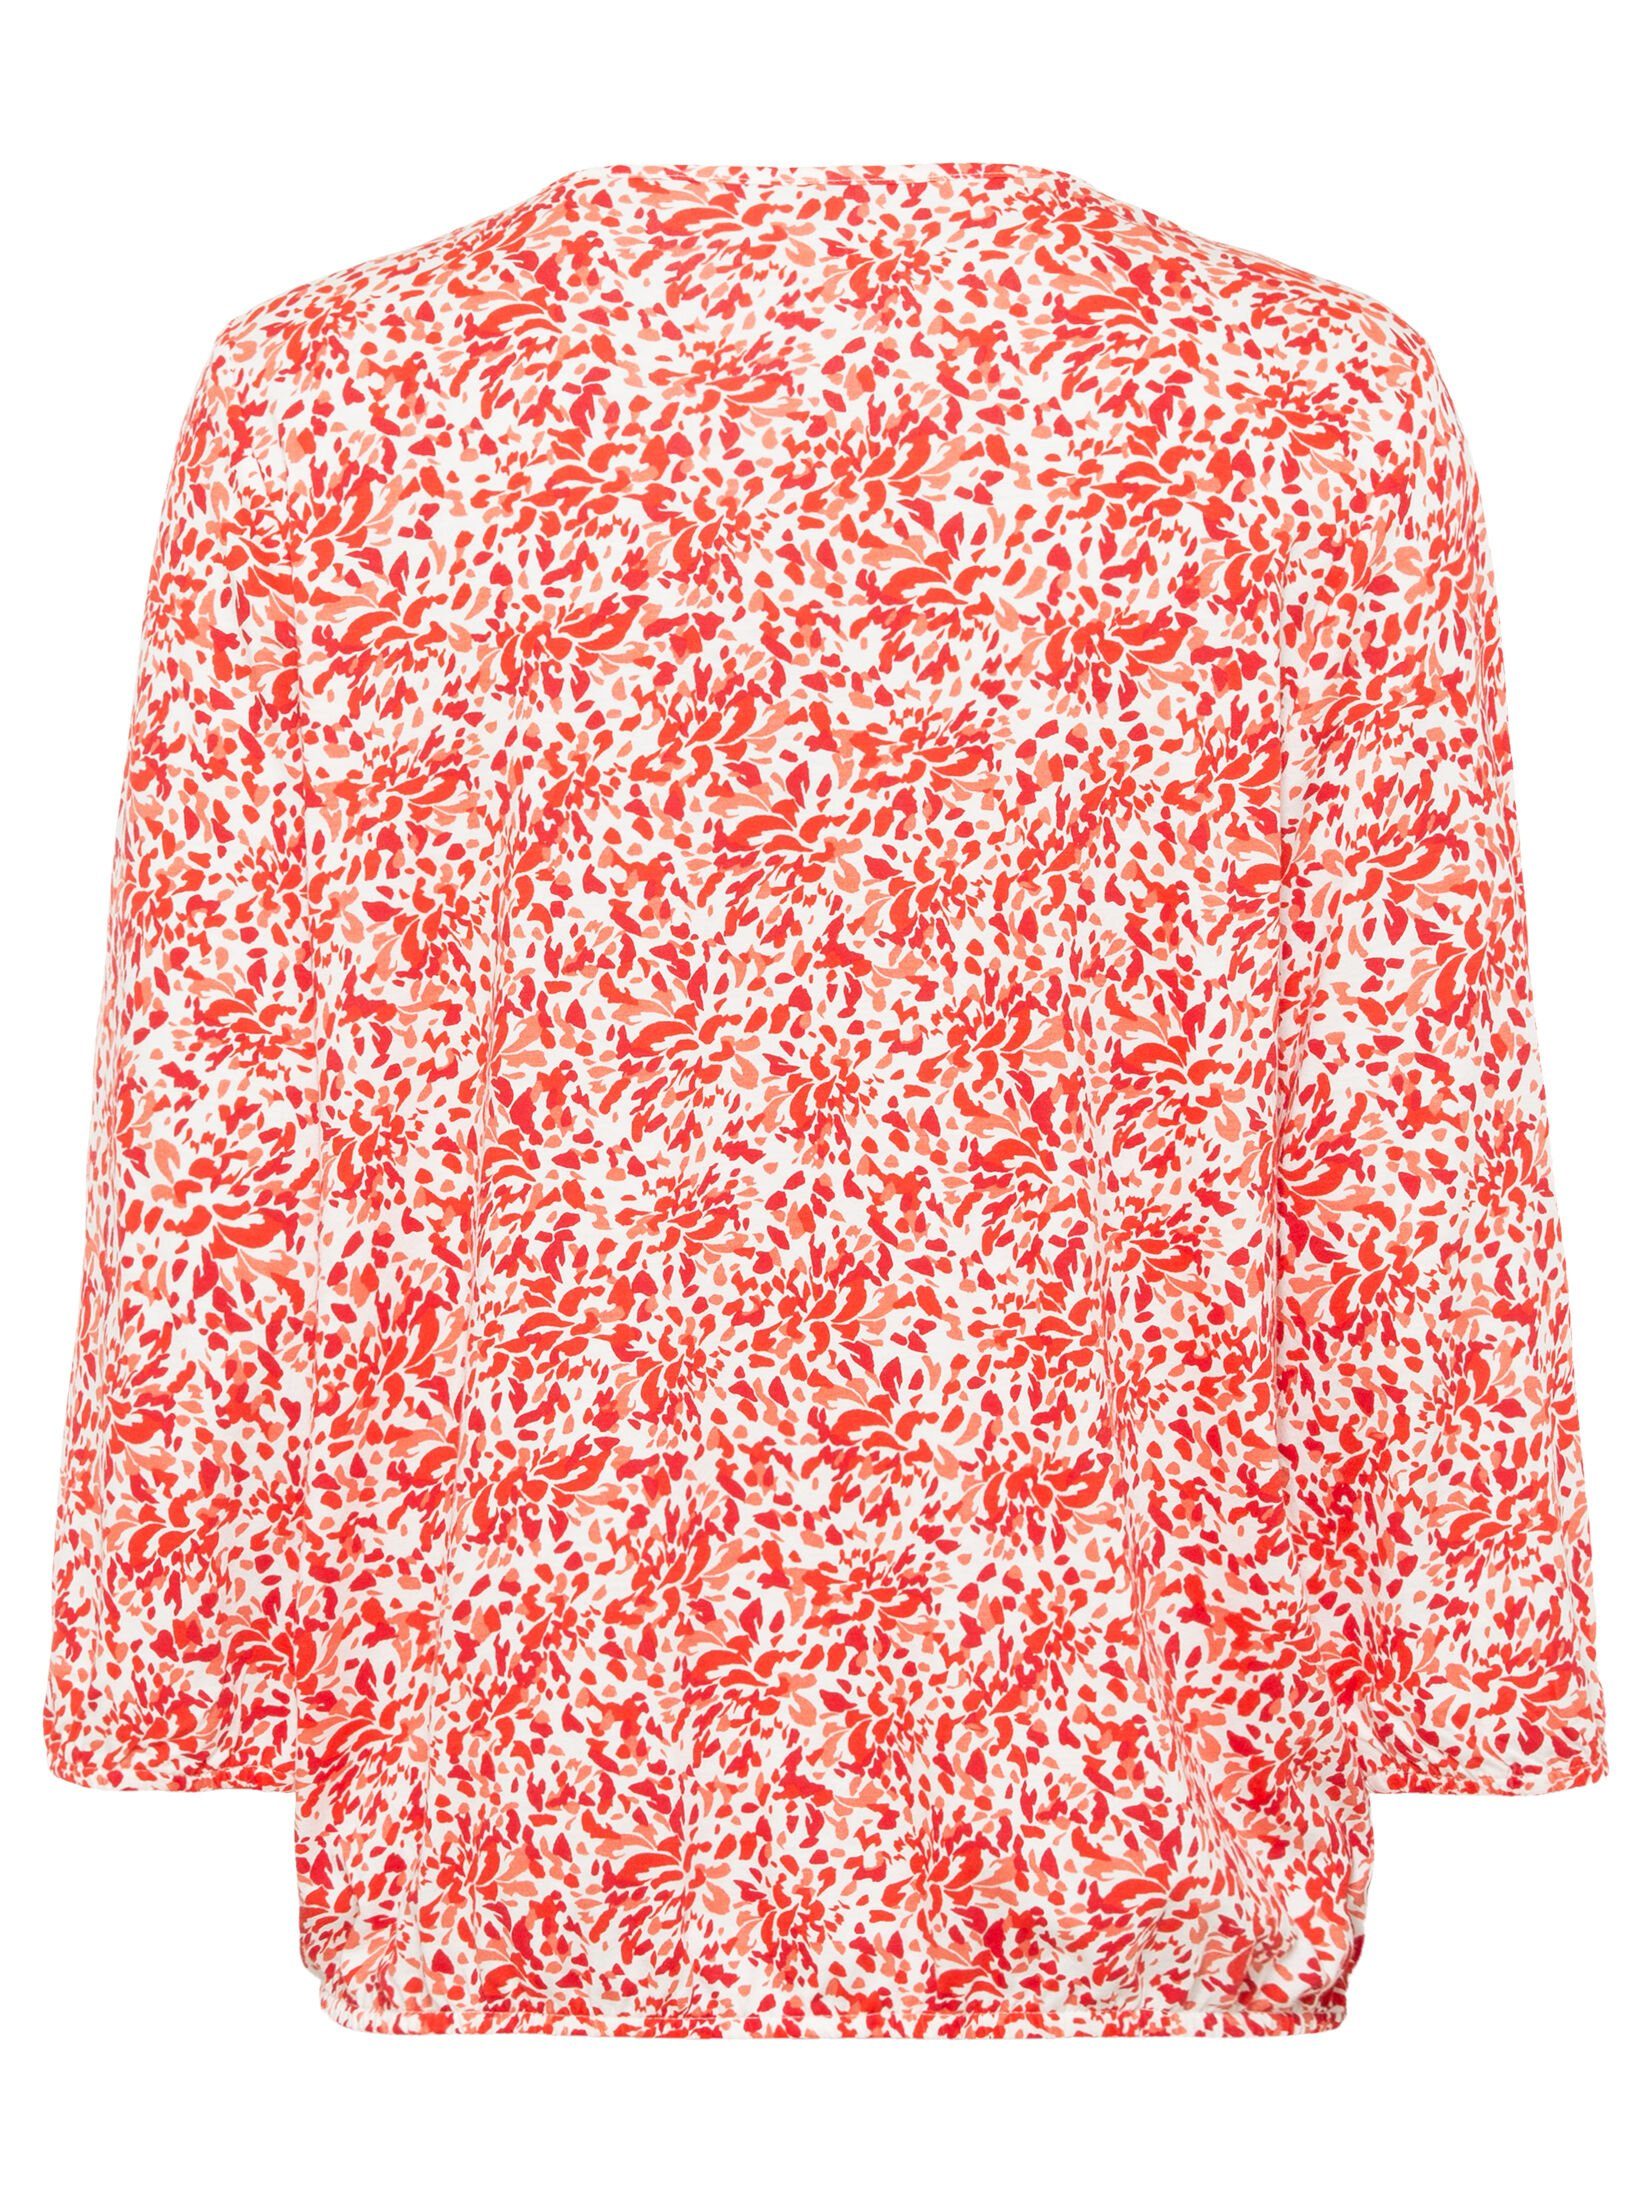 Olsen Rundhalsshirt mit Allover-Blätterprint und Bindebändern